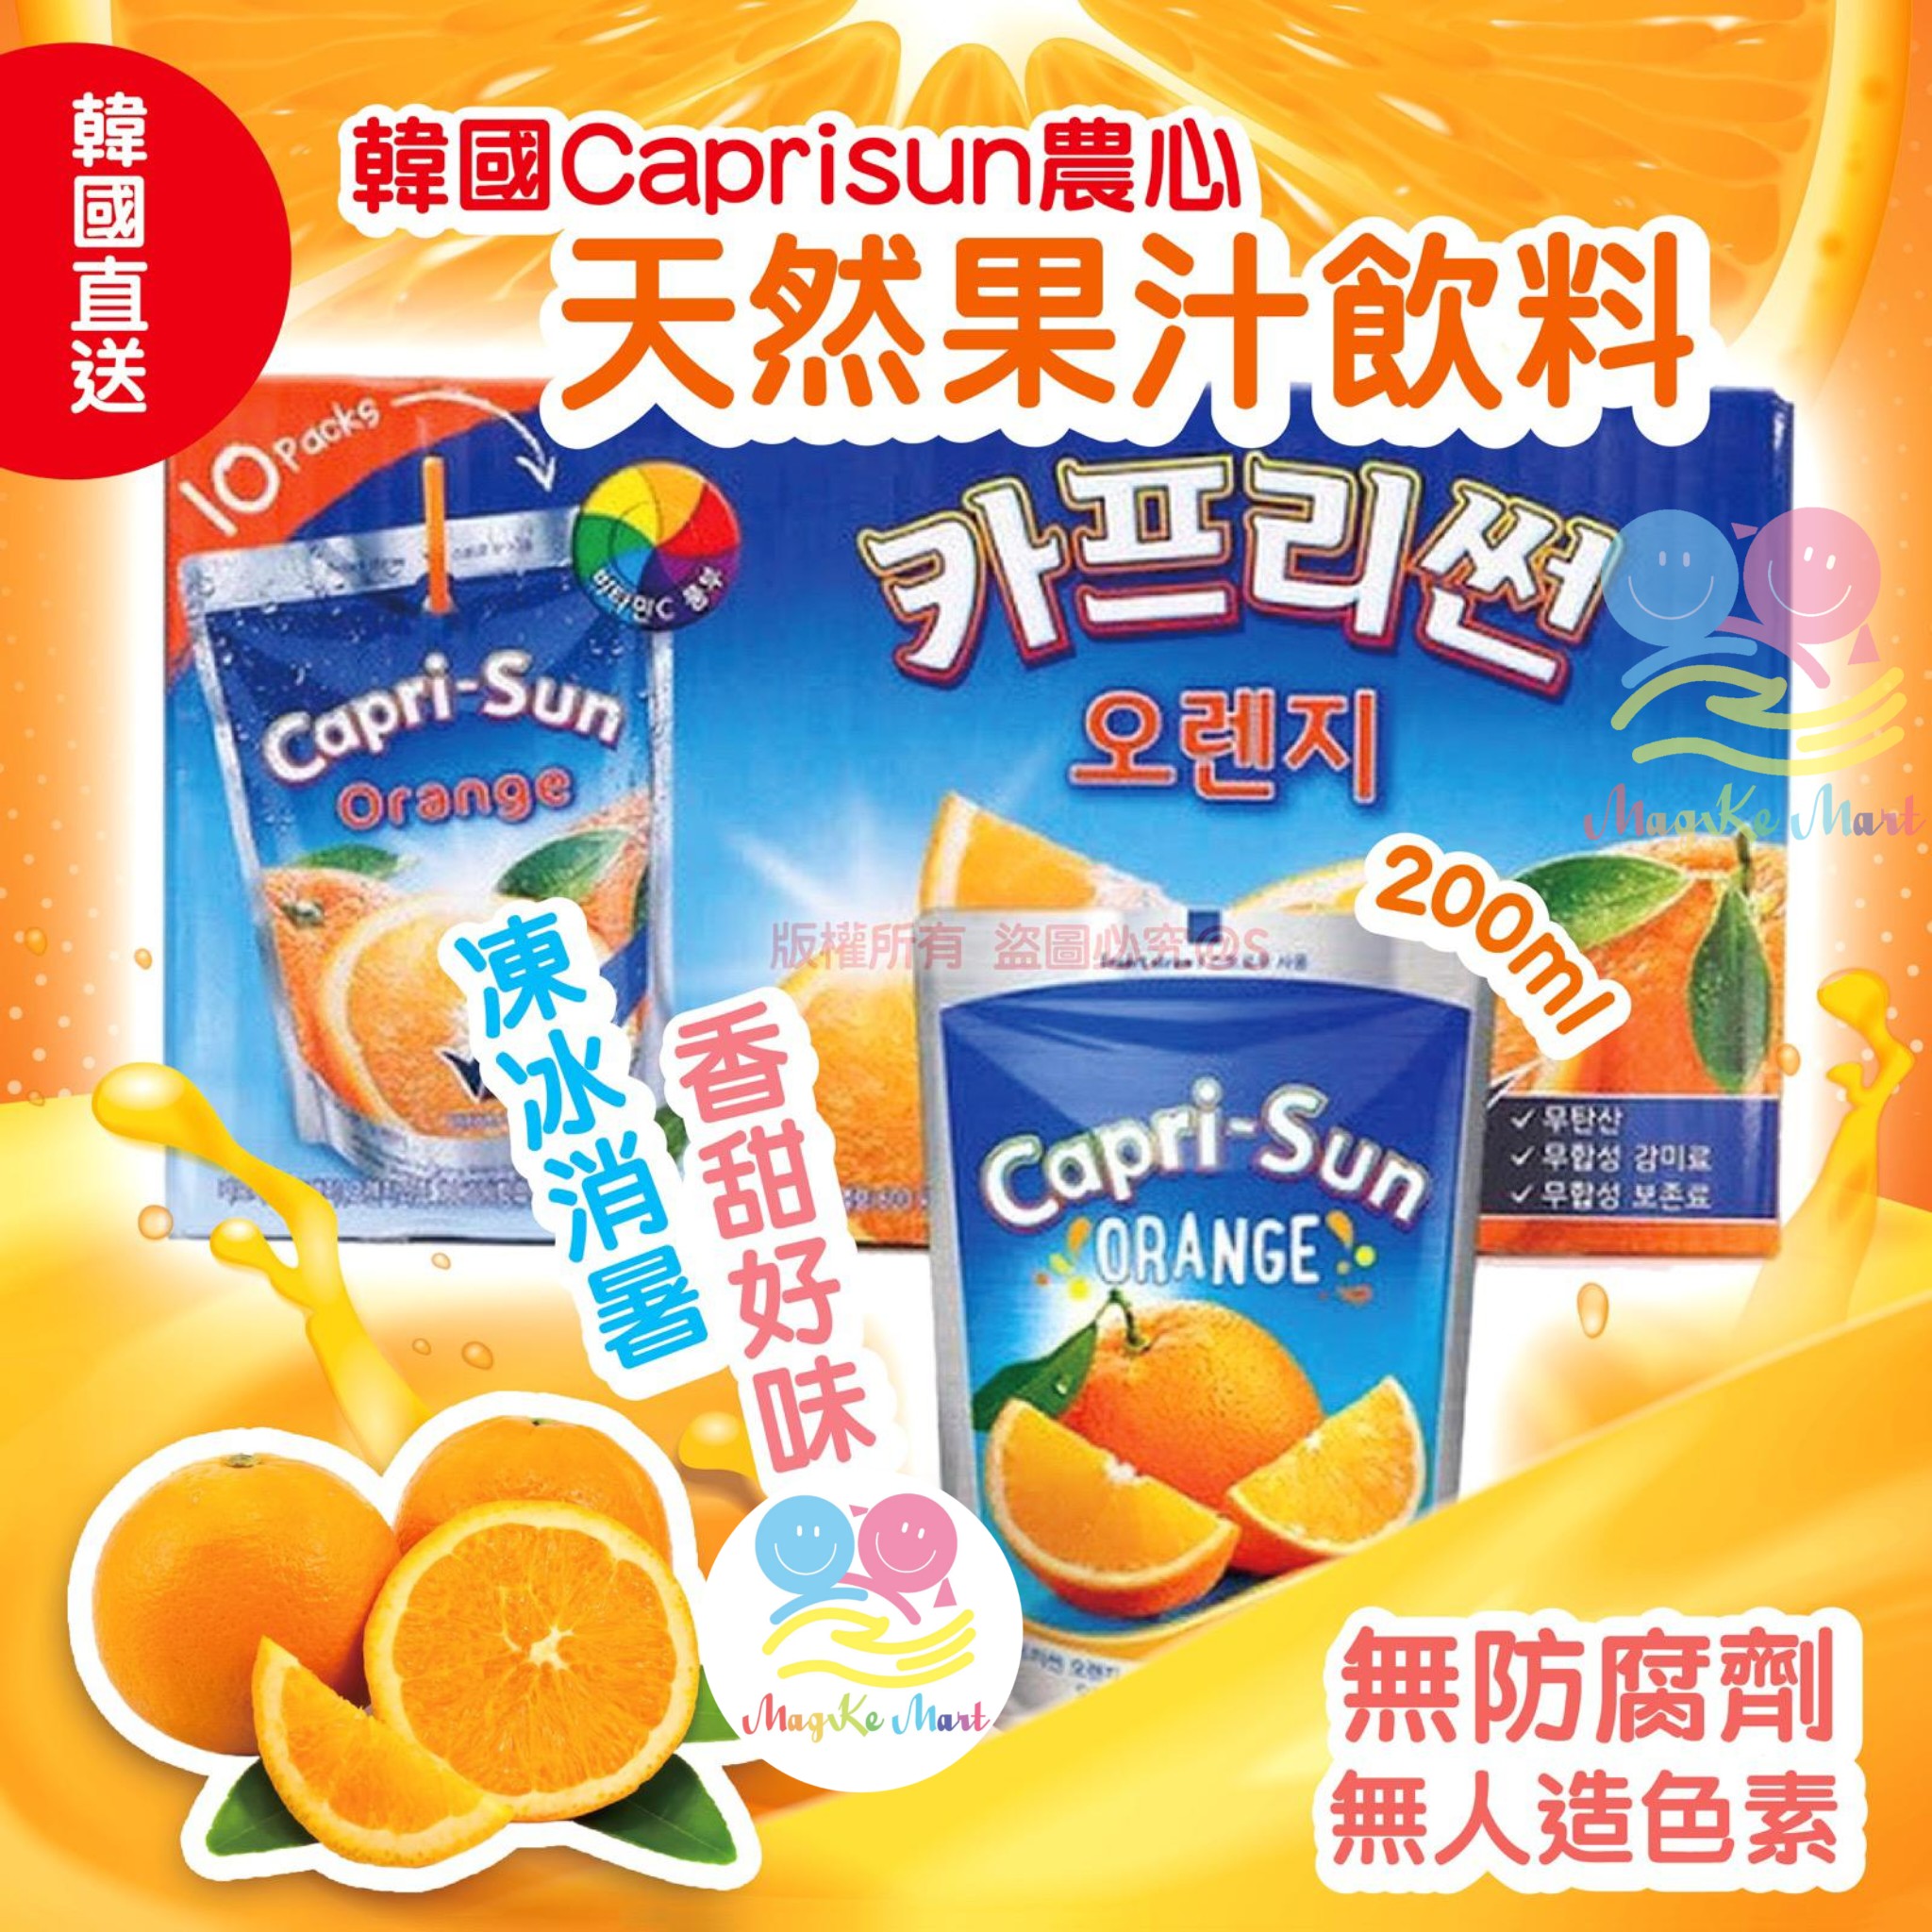 韓國農心 Caprisun 天然果汁飲料(橙汁) 200ml (1套10包)